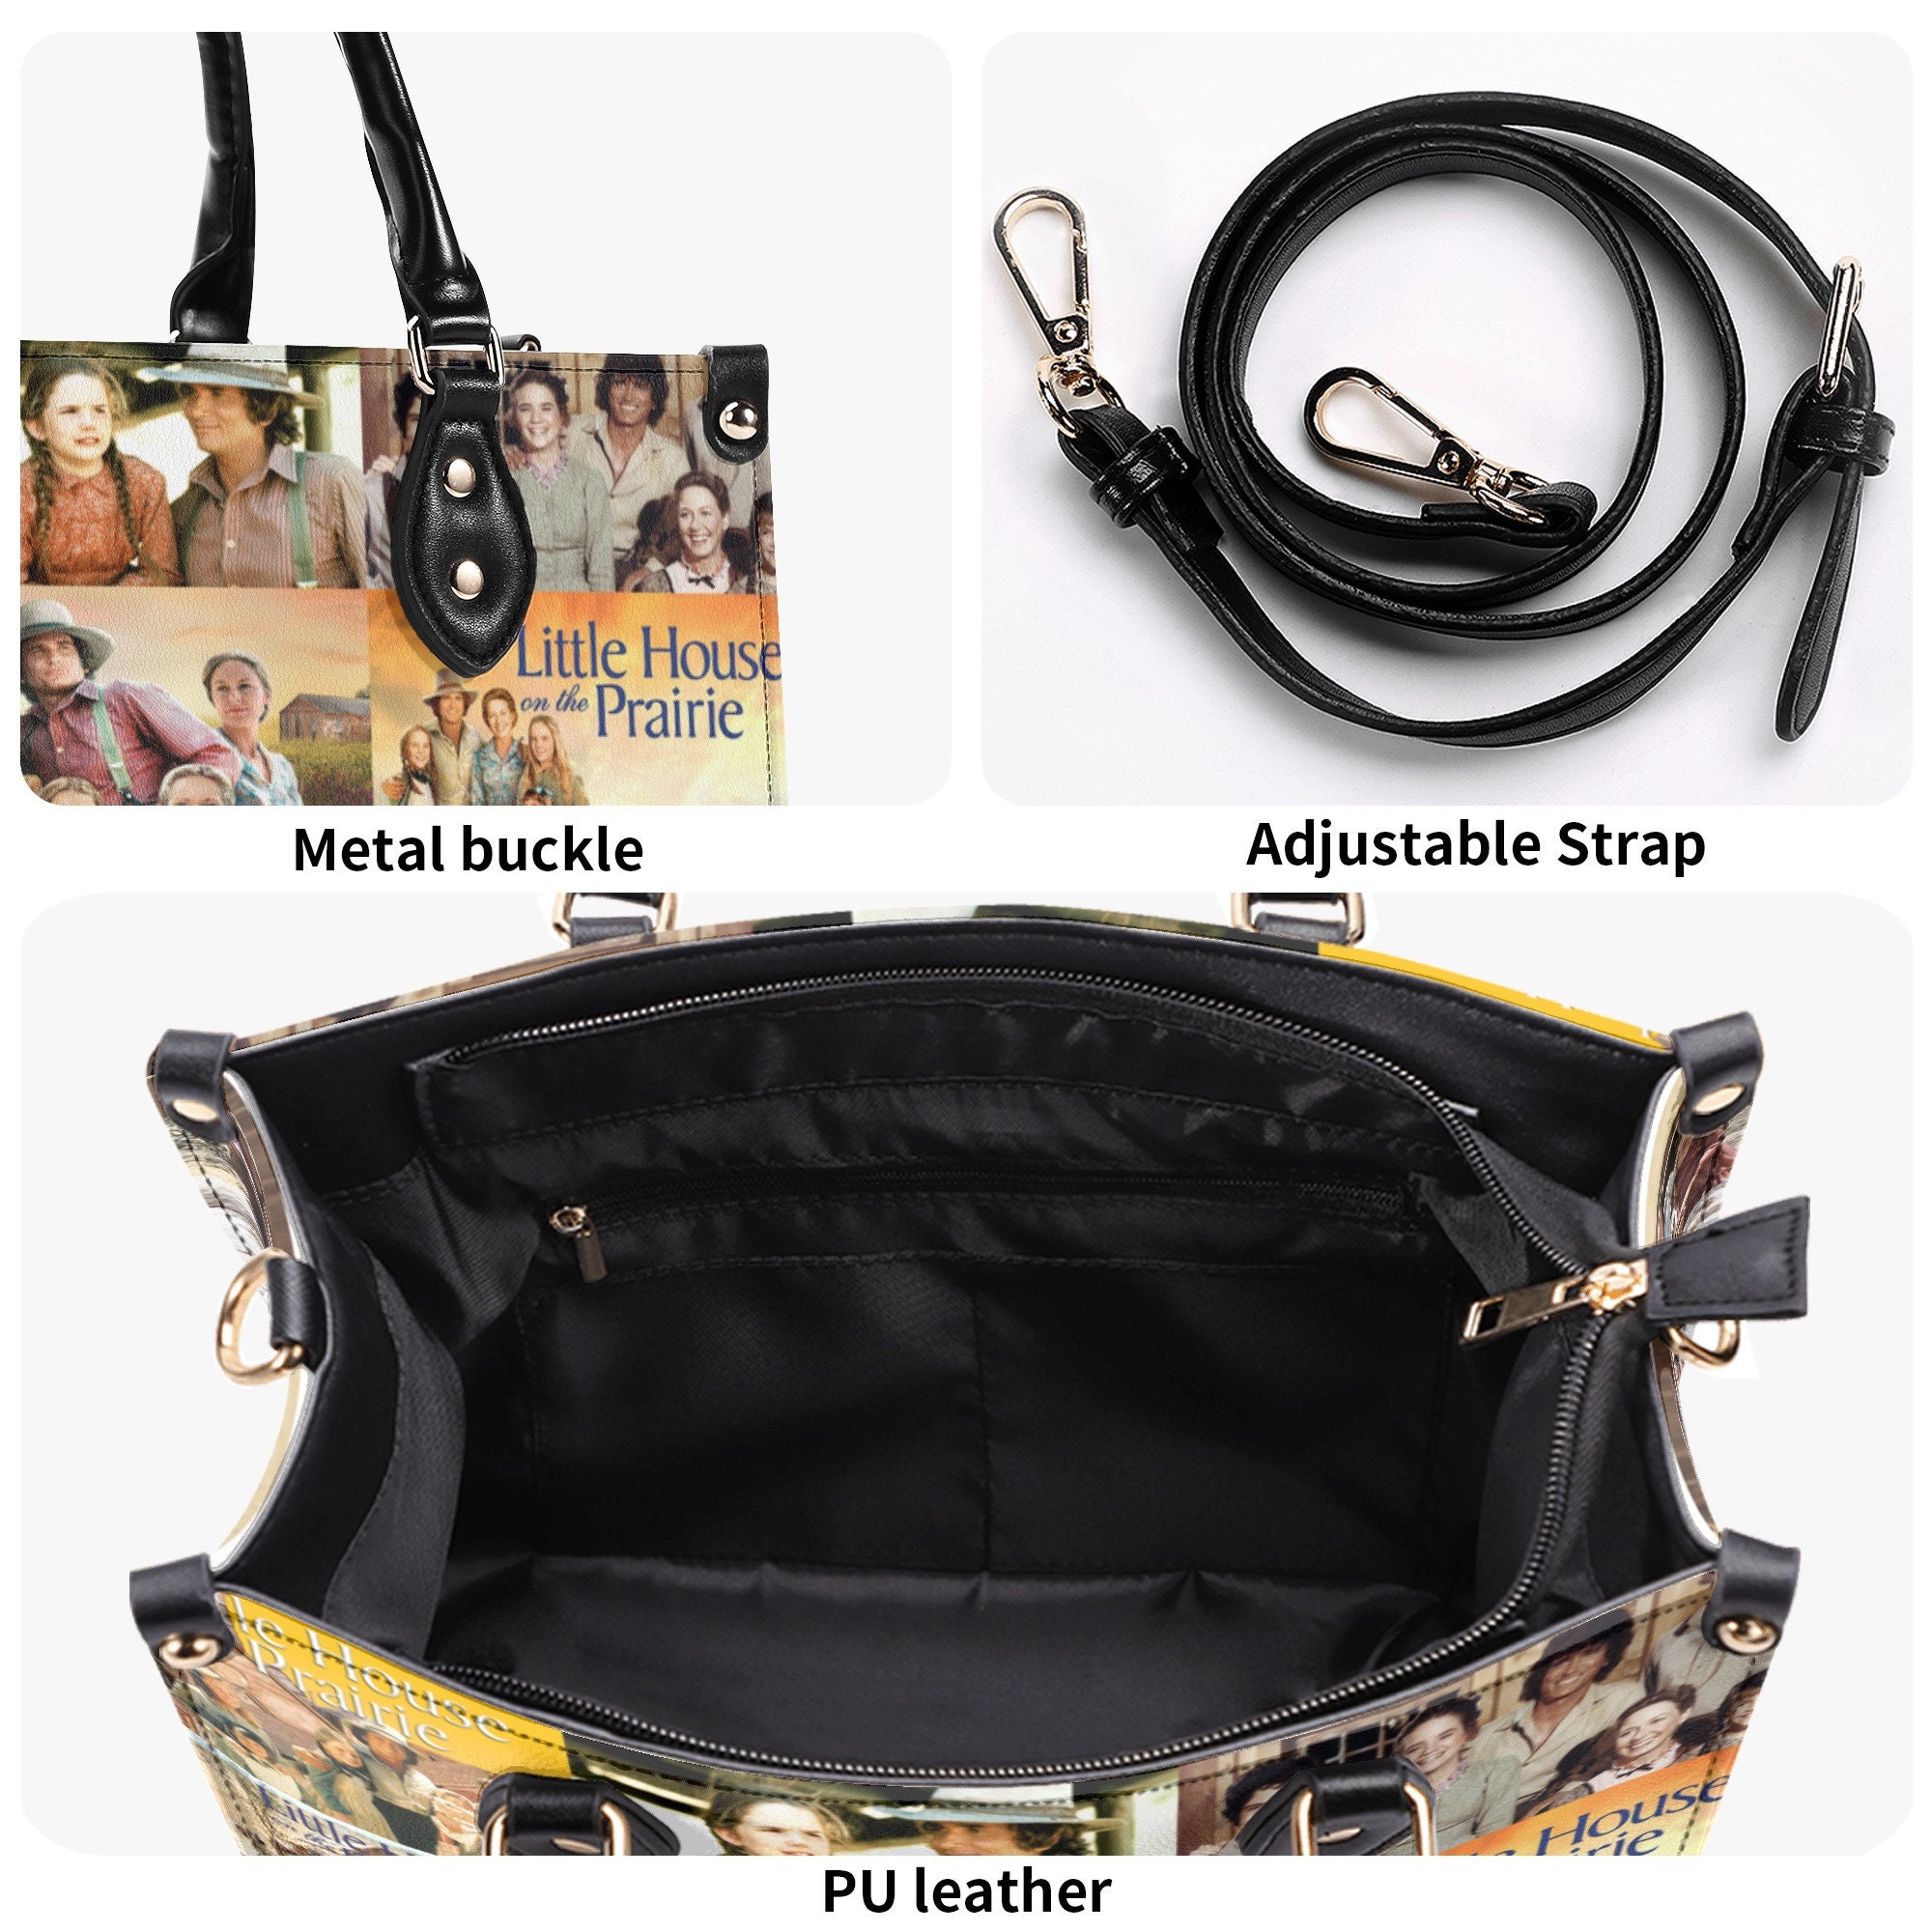 Little House Women Leather Handbag, Travel handbag, Gift for fan